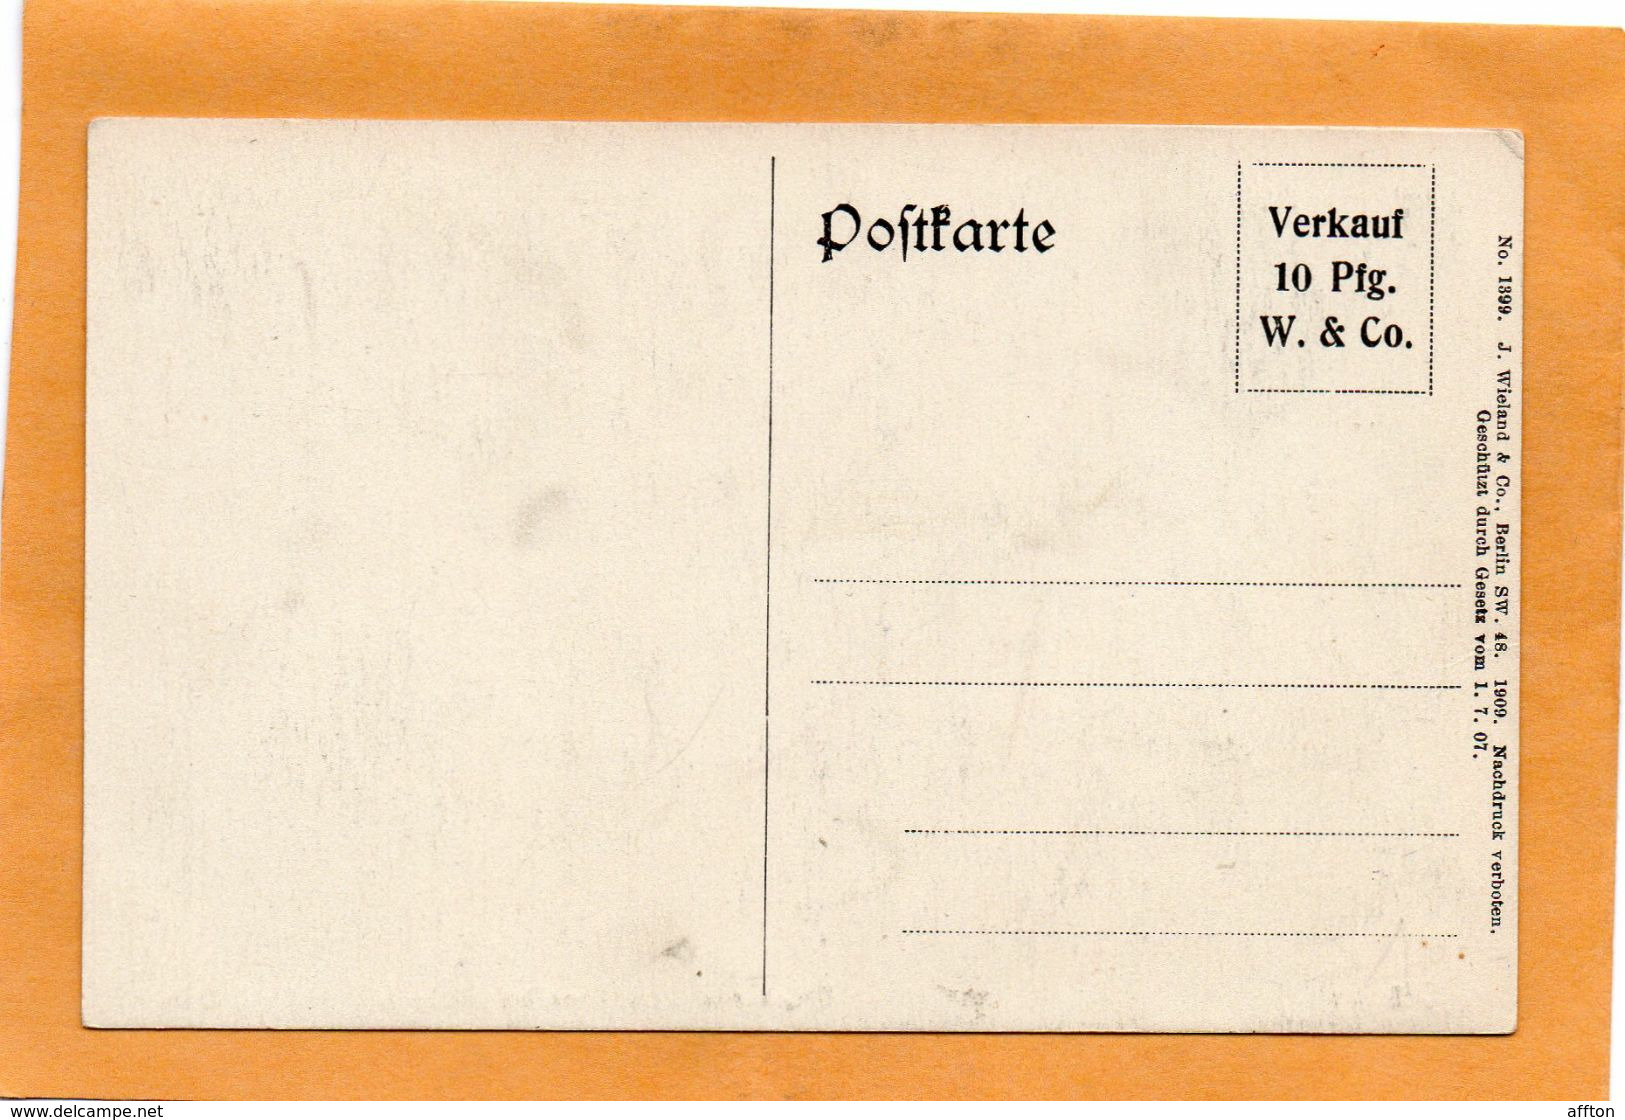 Grunau Germany 1907 Postcard - Treptow